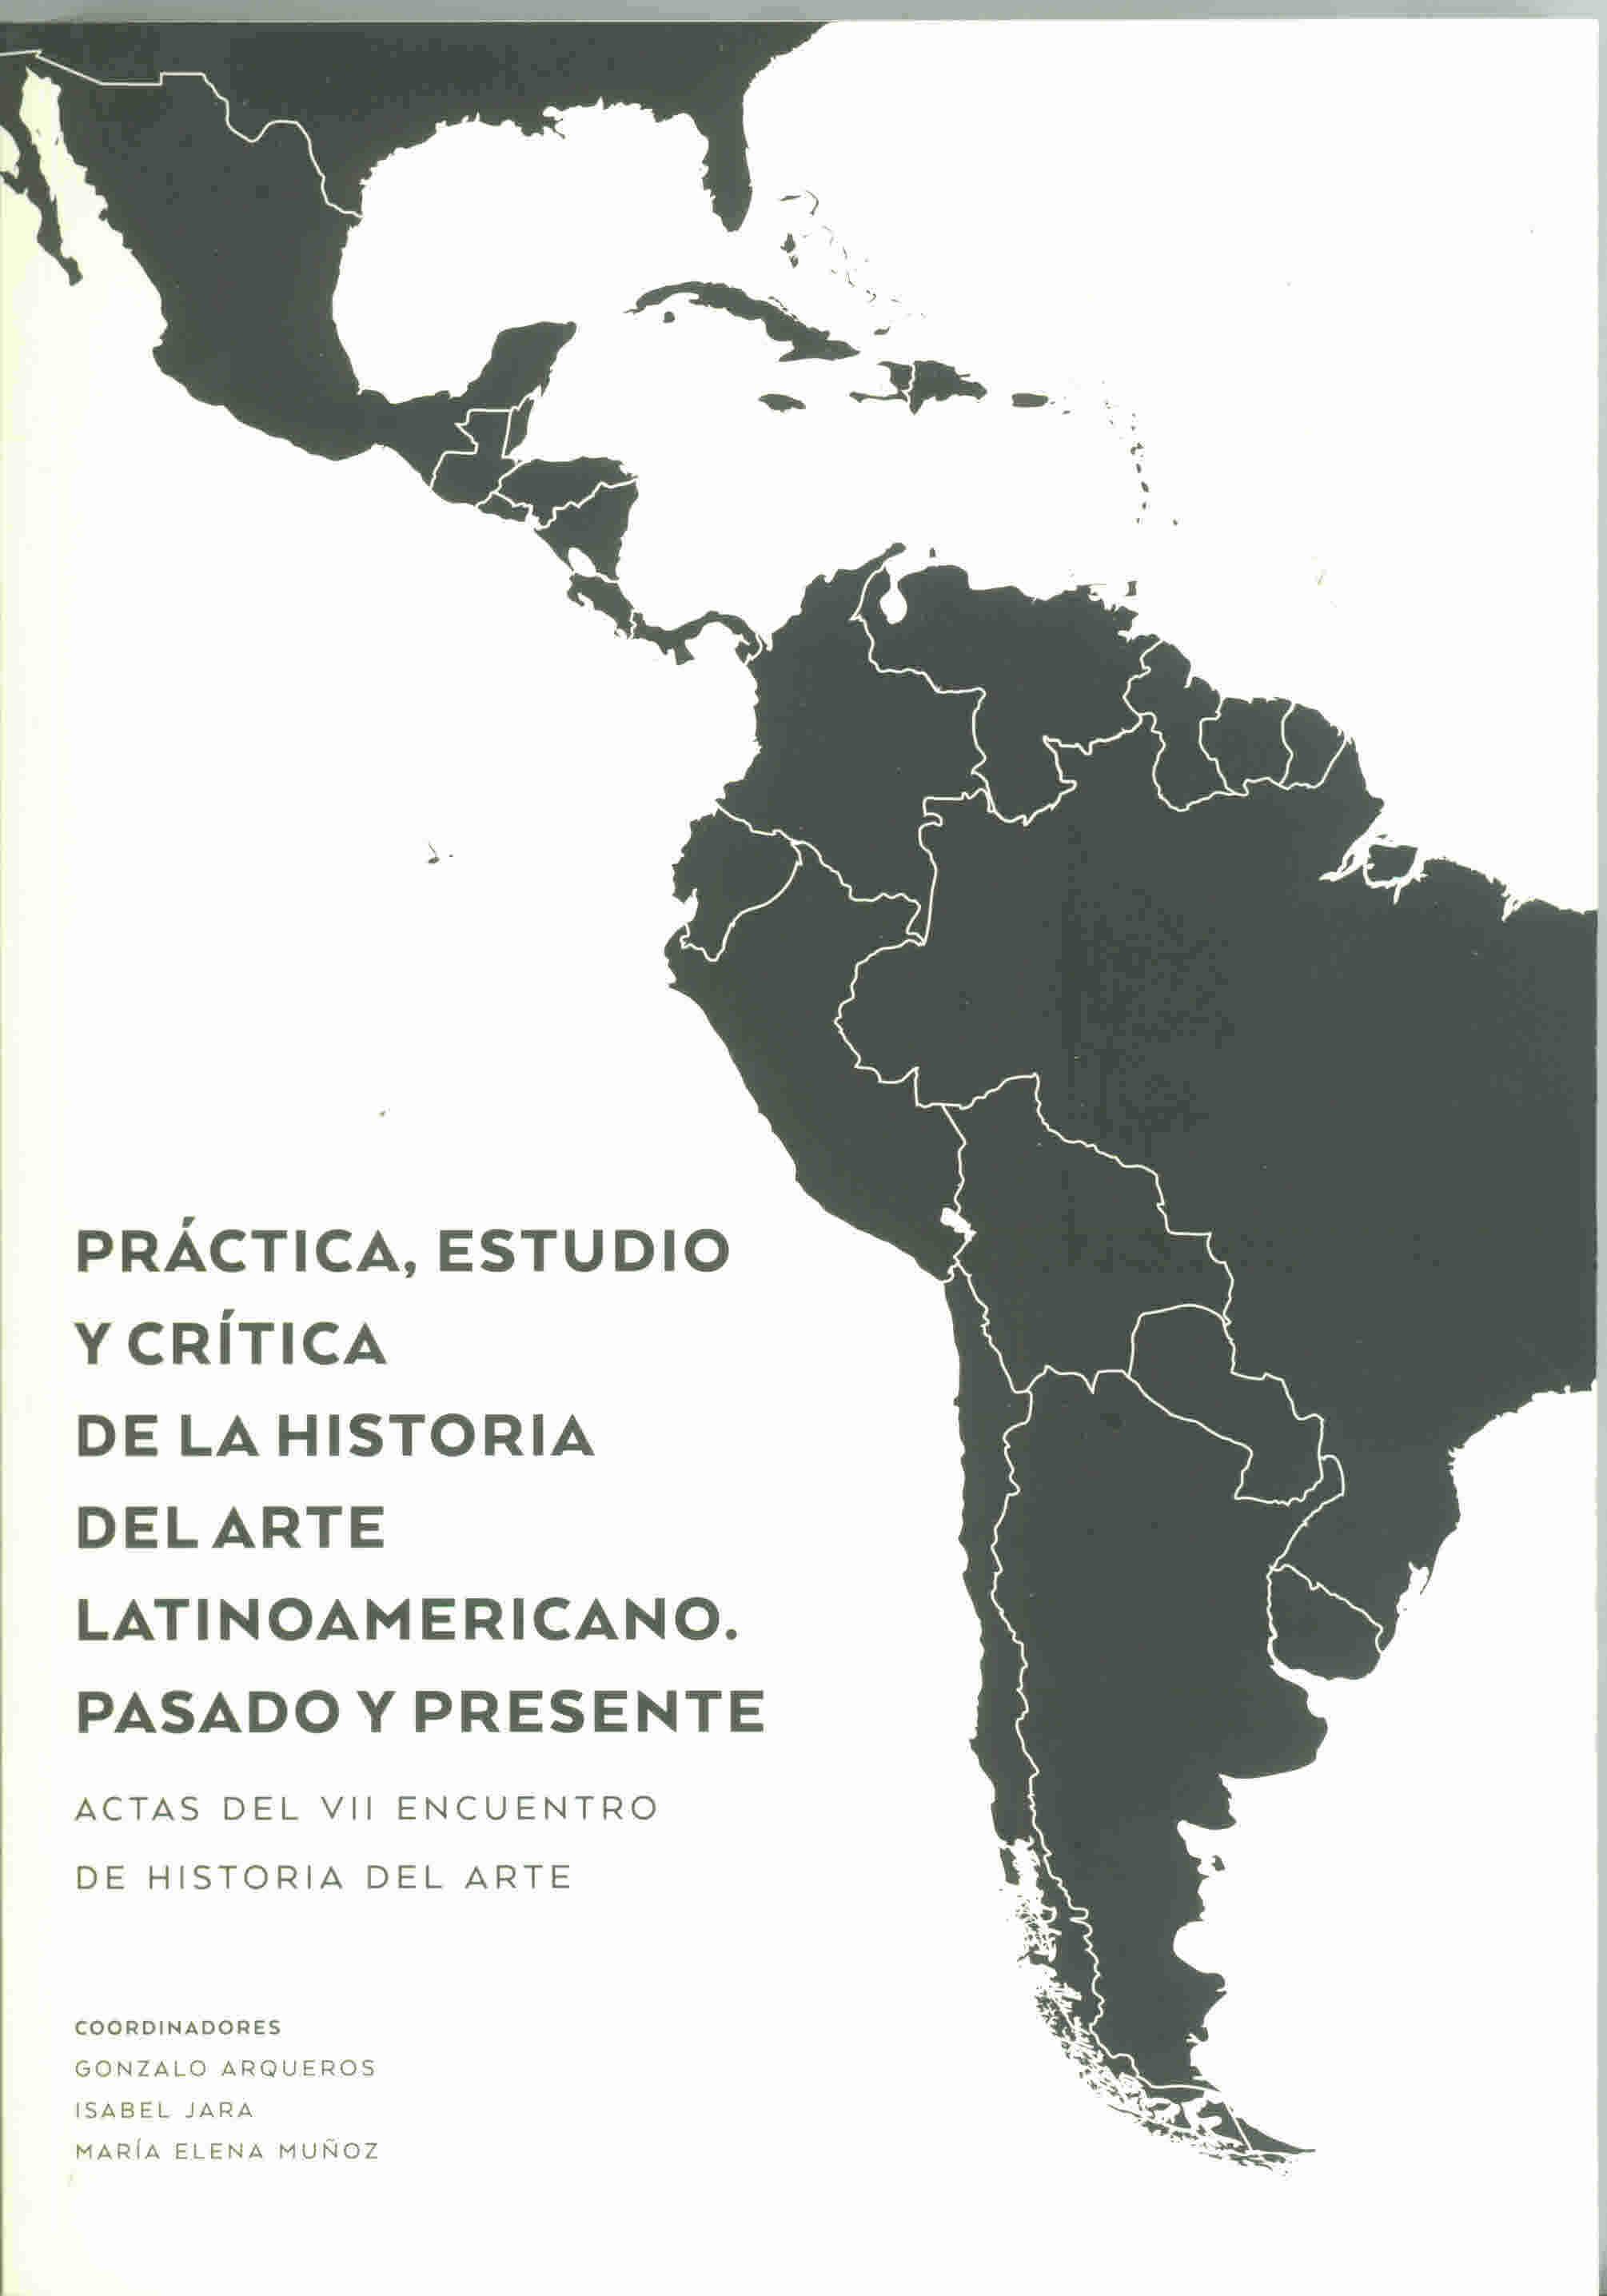 Prácticas, estudio y crítica del arte latinoamericano. Pasado y presente. Actas del VII Encuentro de Historia del Arte